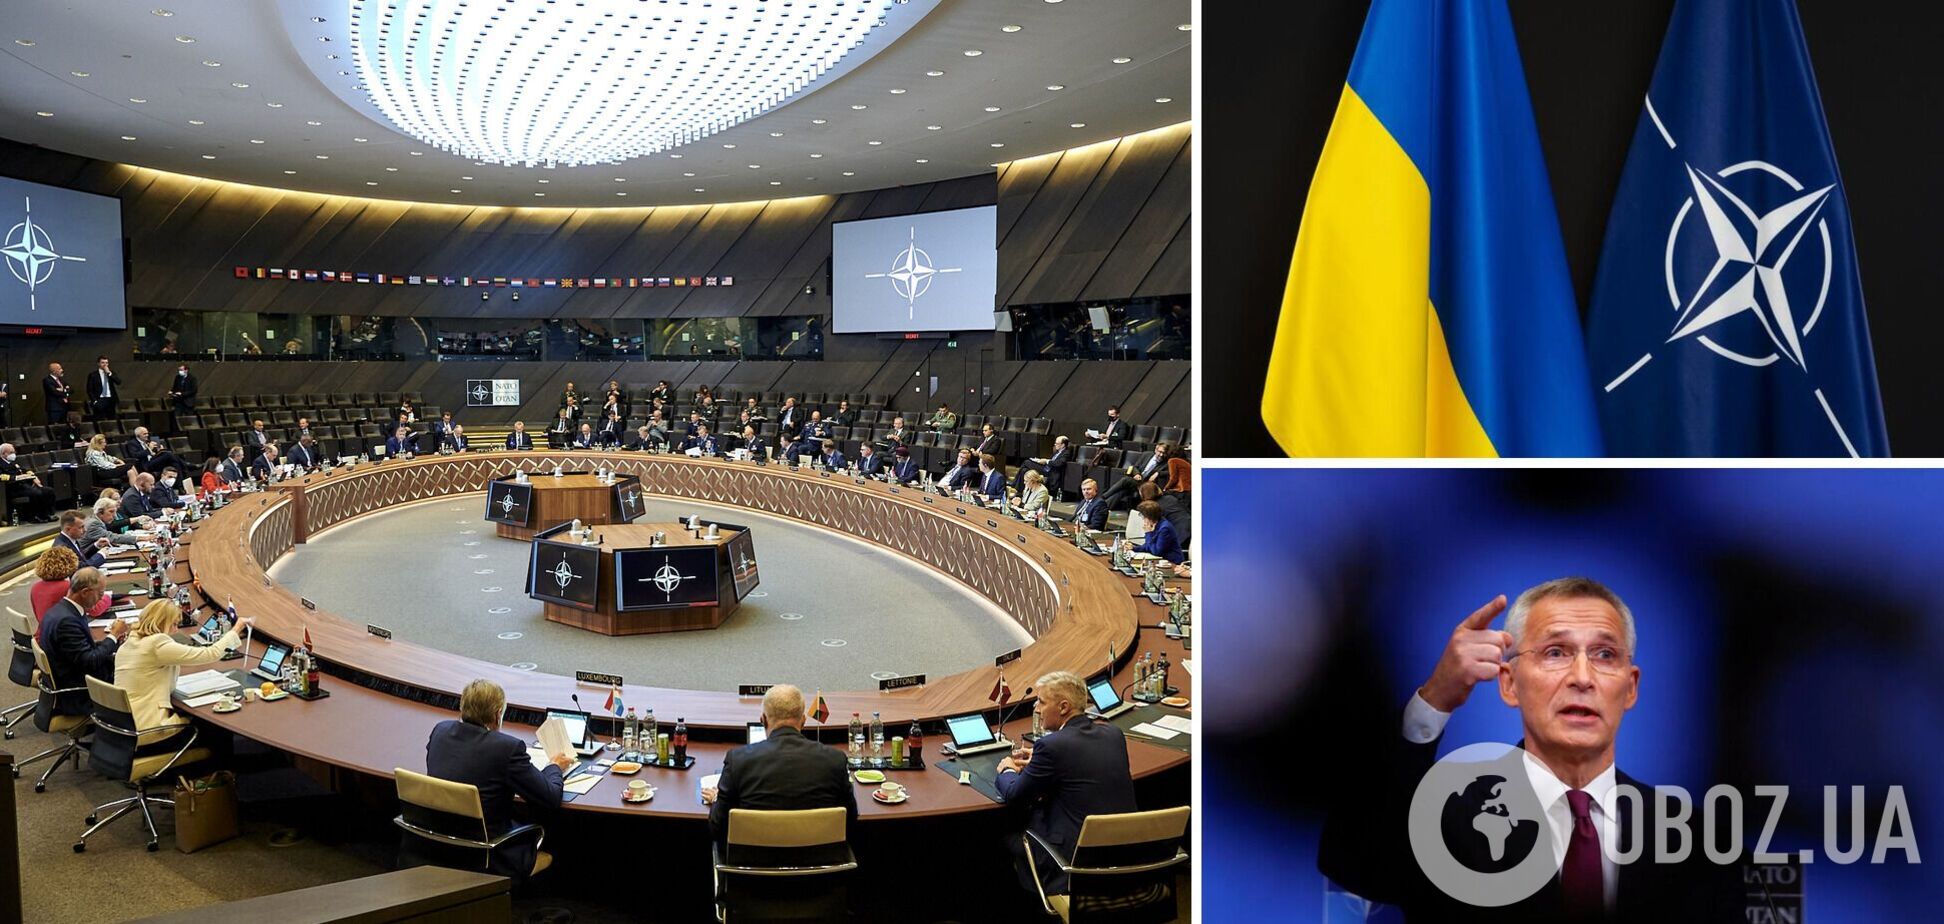 'Вечно открытая дверь' или 'добро просим': кто из кандидатов на генсека НАТО лучший для Украины